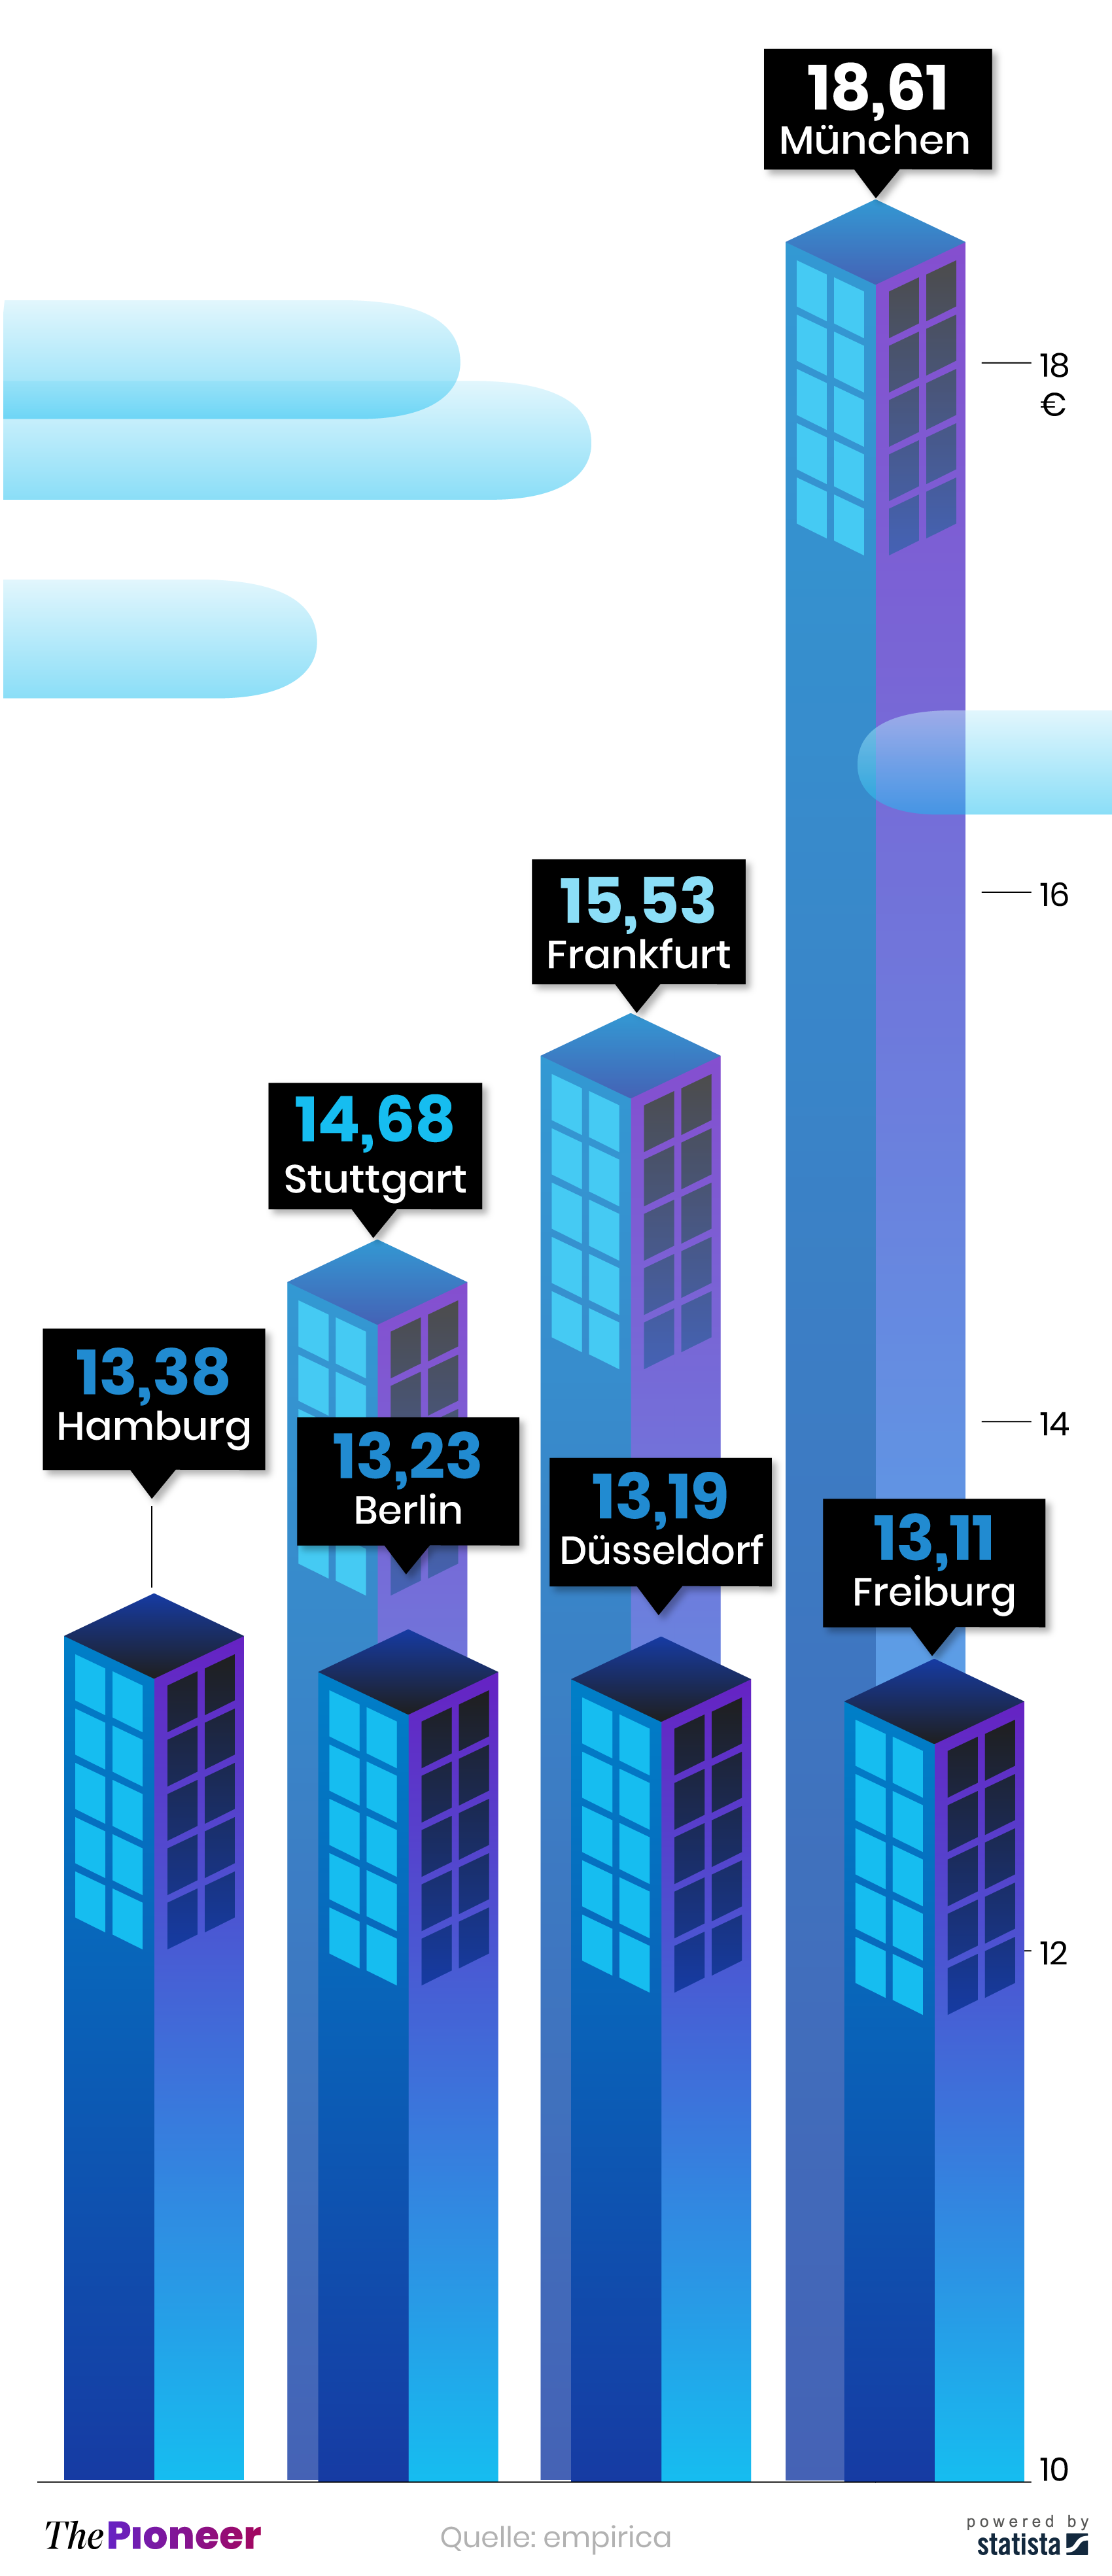 Städte mit den höchsten Mietpreisen in Deutschland –Stand Q4 2020 in Euro pro Quadratmeter